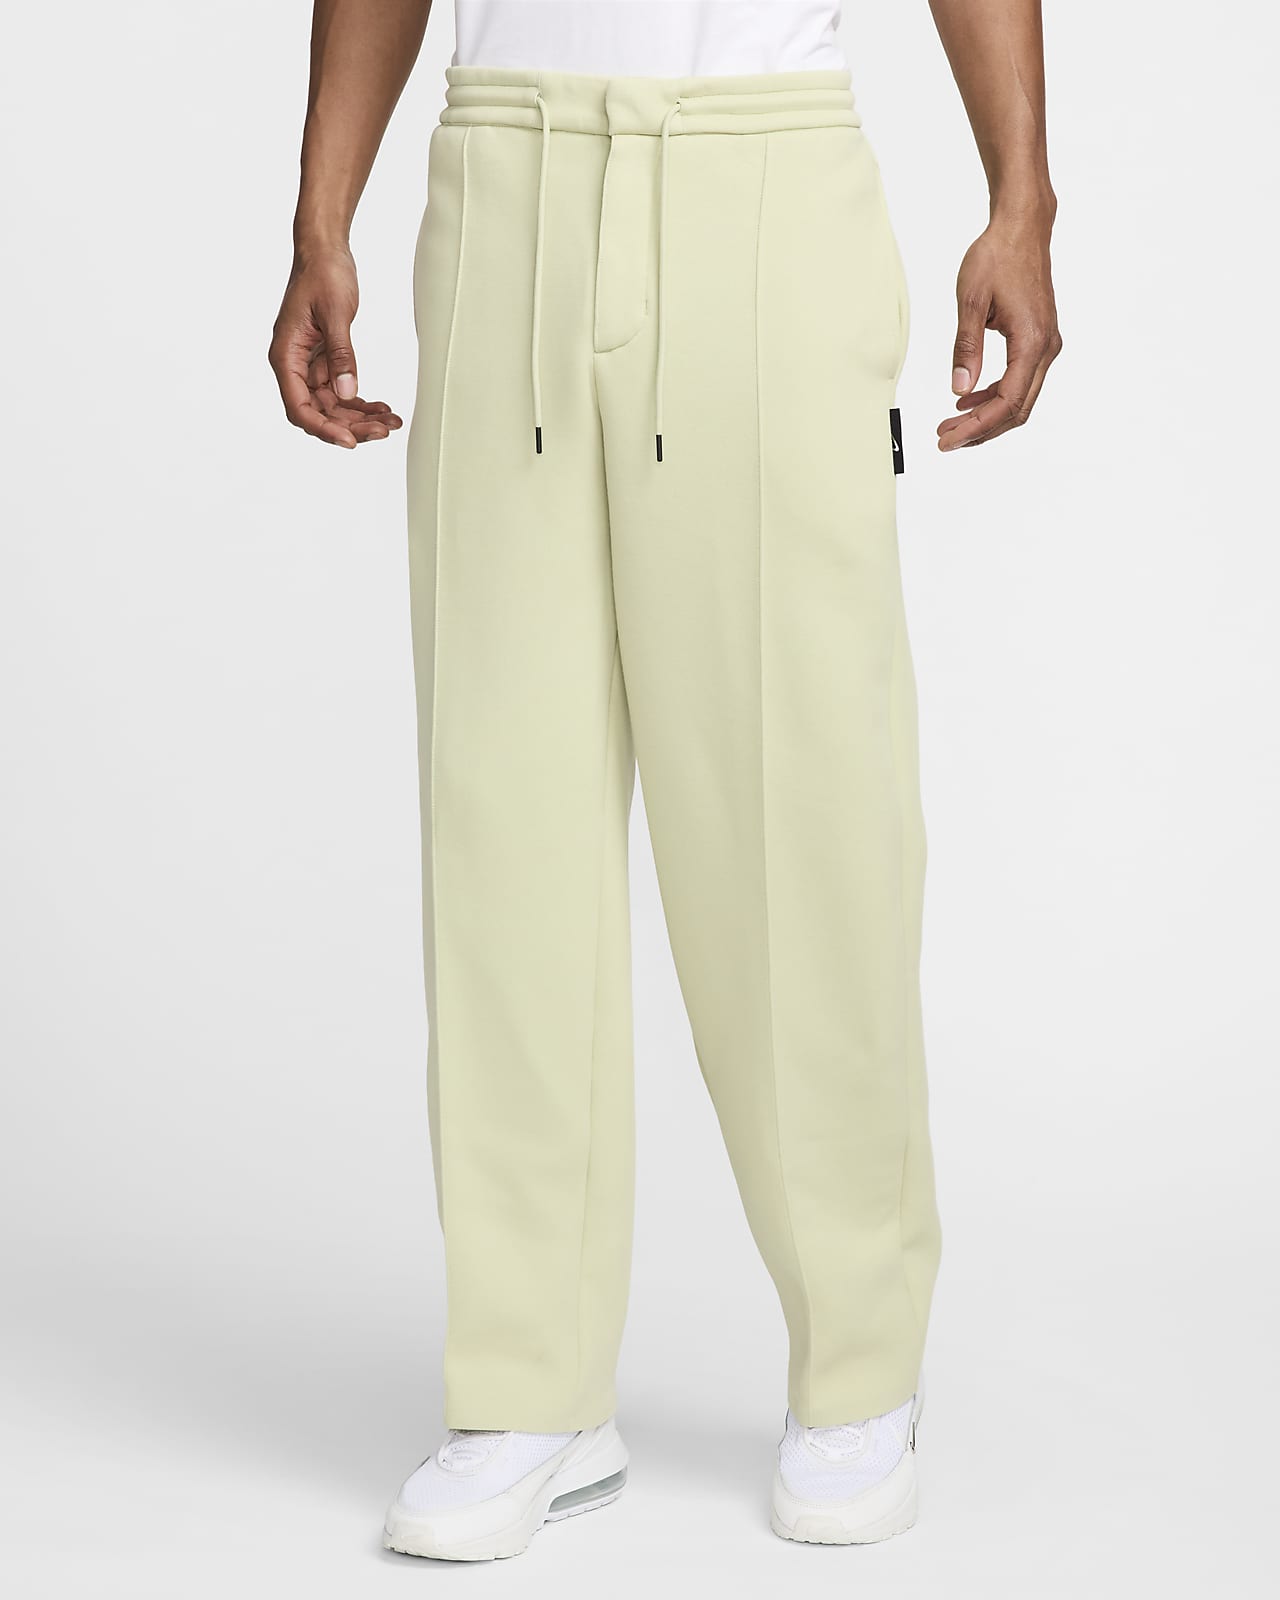 Pants de tejido Fleece entallados para hombre Nike Tech